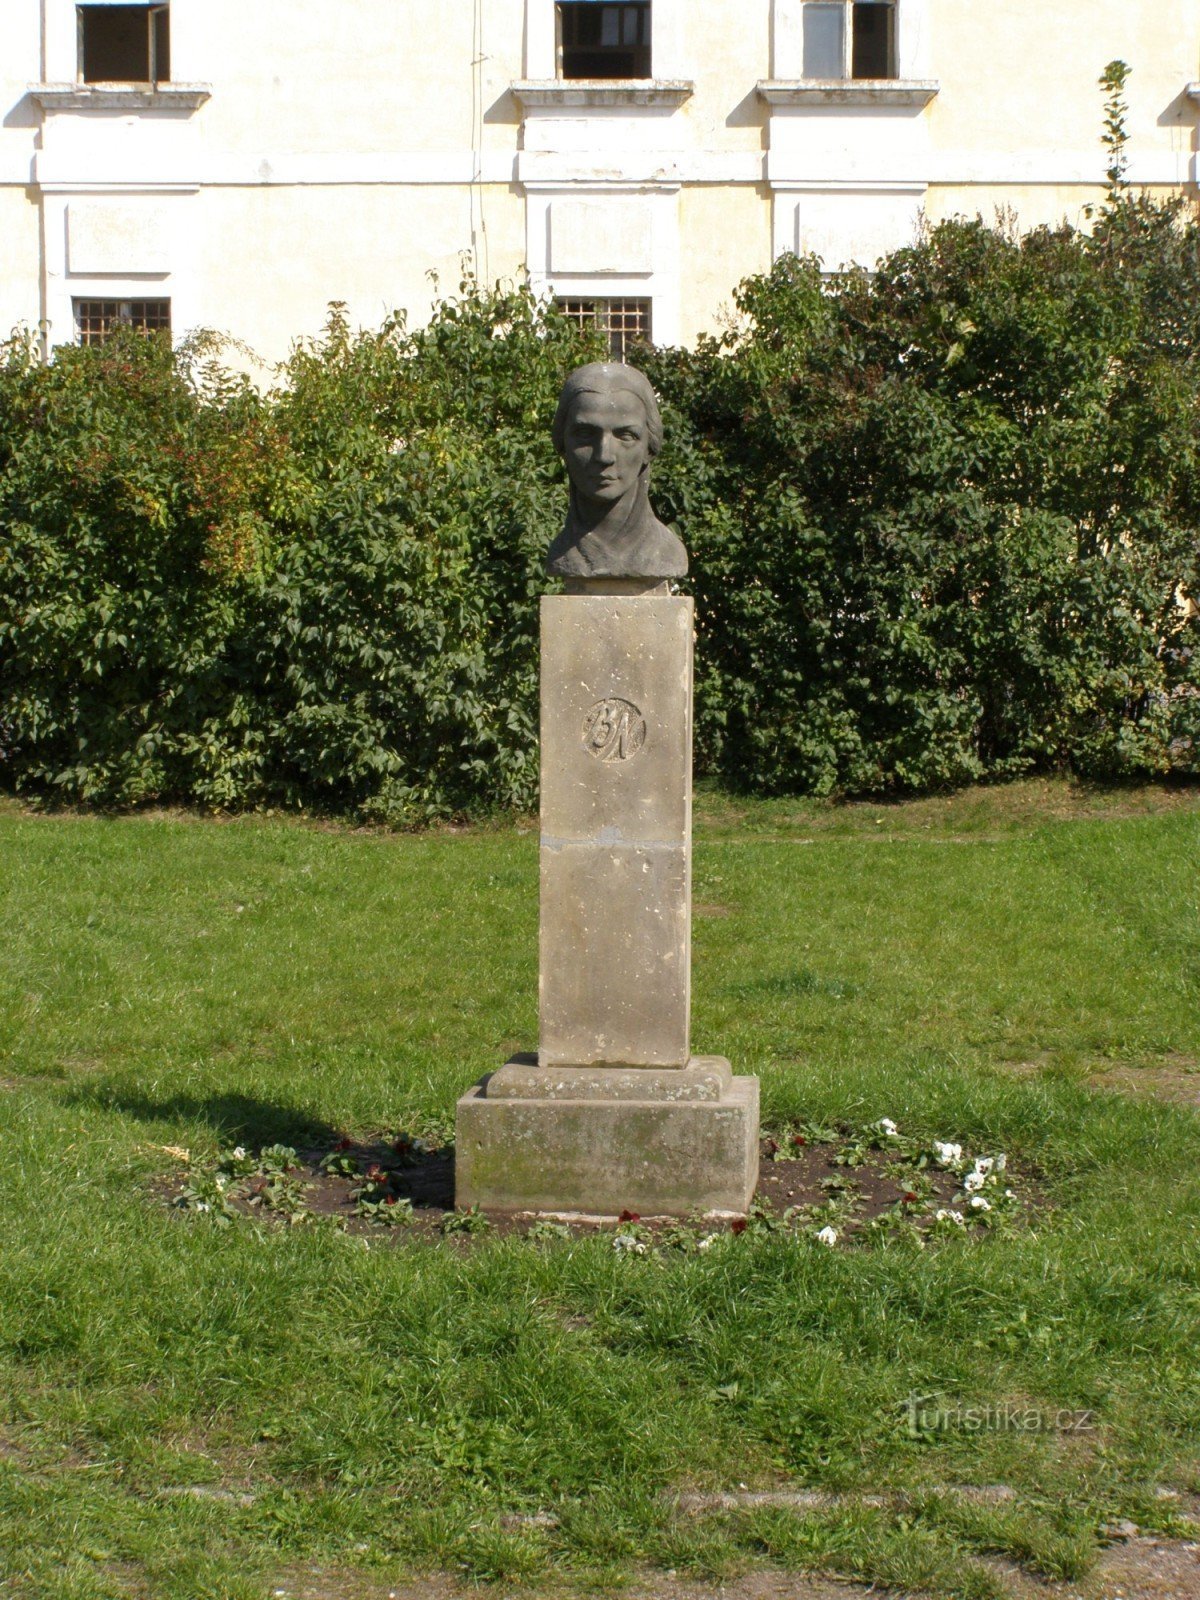 Josefov - monument voor Bozena Němcová